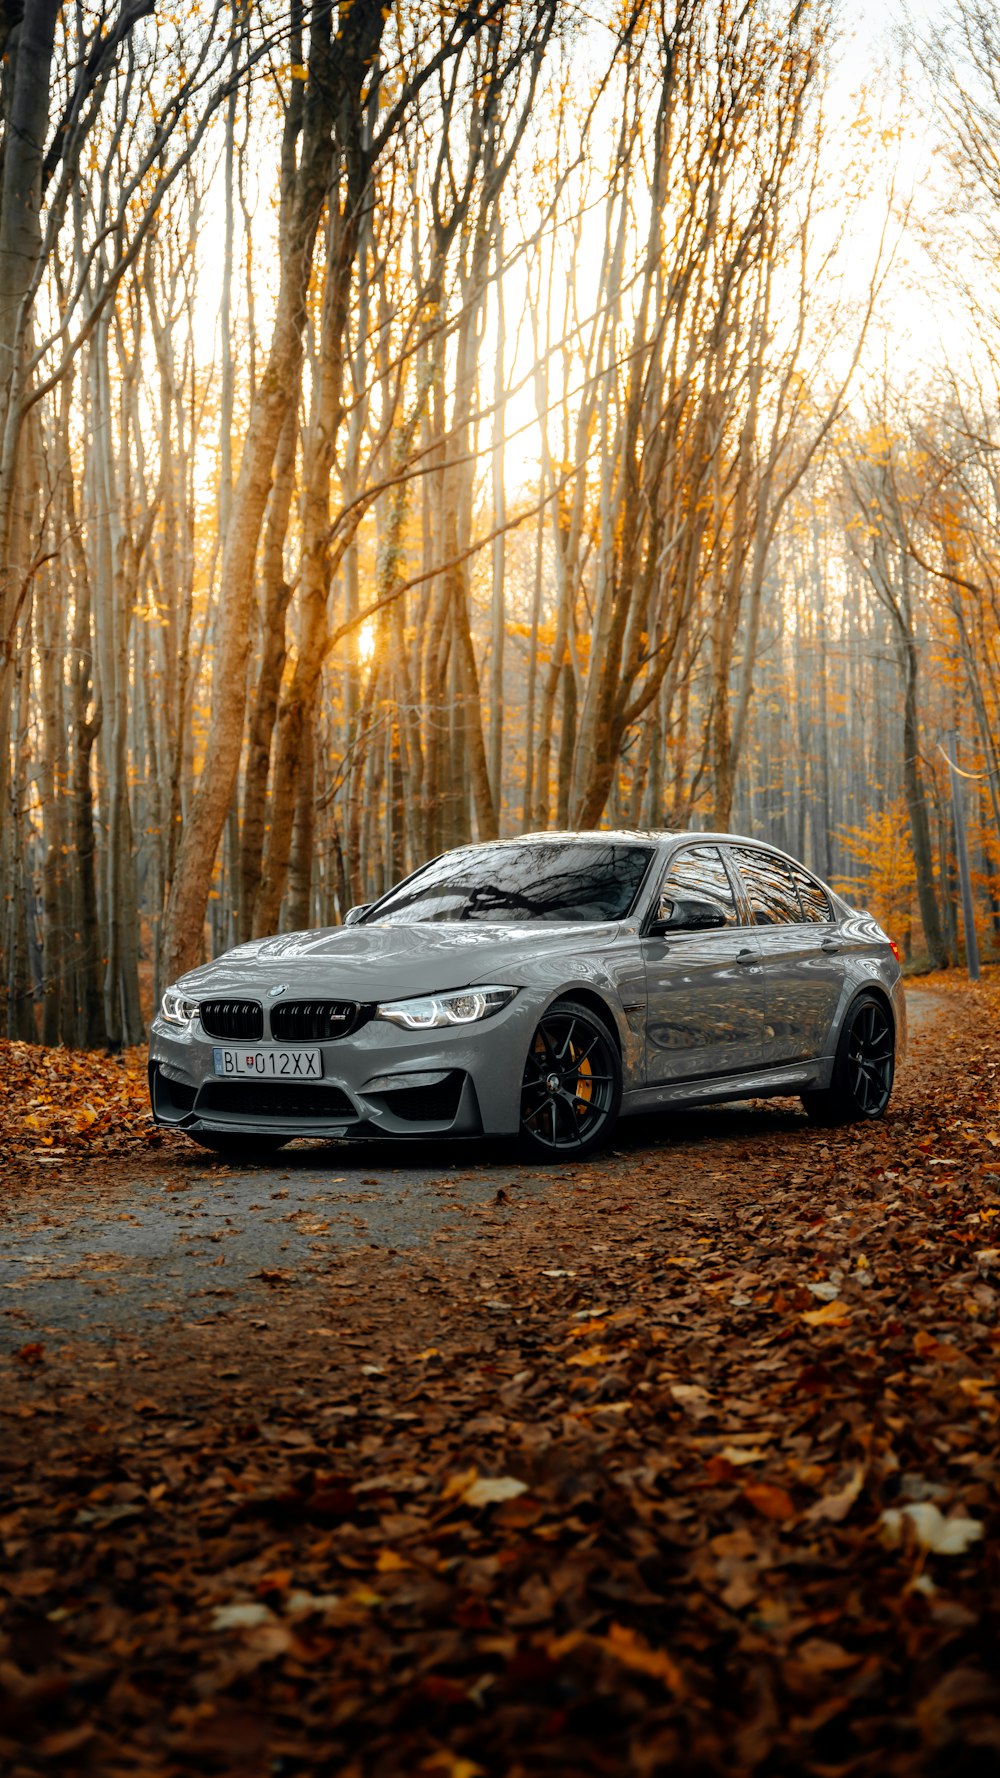 Hình nền BMW miễn phí: Khám phá những bức hình nền BMW được cung cấp miễn phí với nhiều mẫu xe hấp dẫn để bạn chọn lựa. Tận hưởng sự đẳng cấp và phong cách của dòng xe này và chuyển đổi giao diện màn hình của bạn thành một \